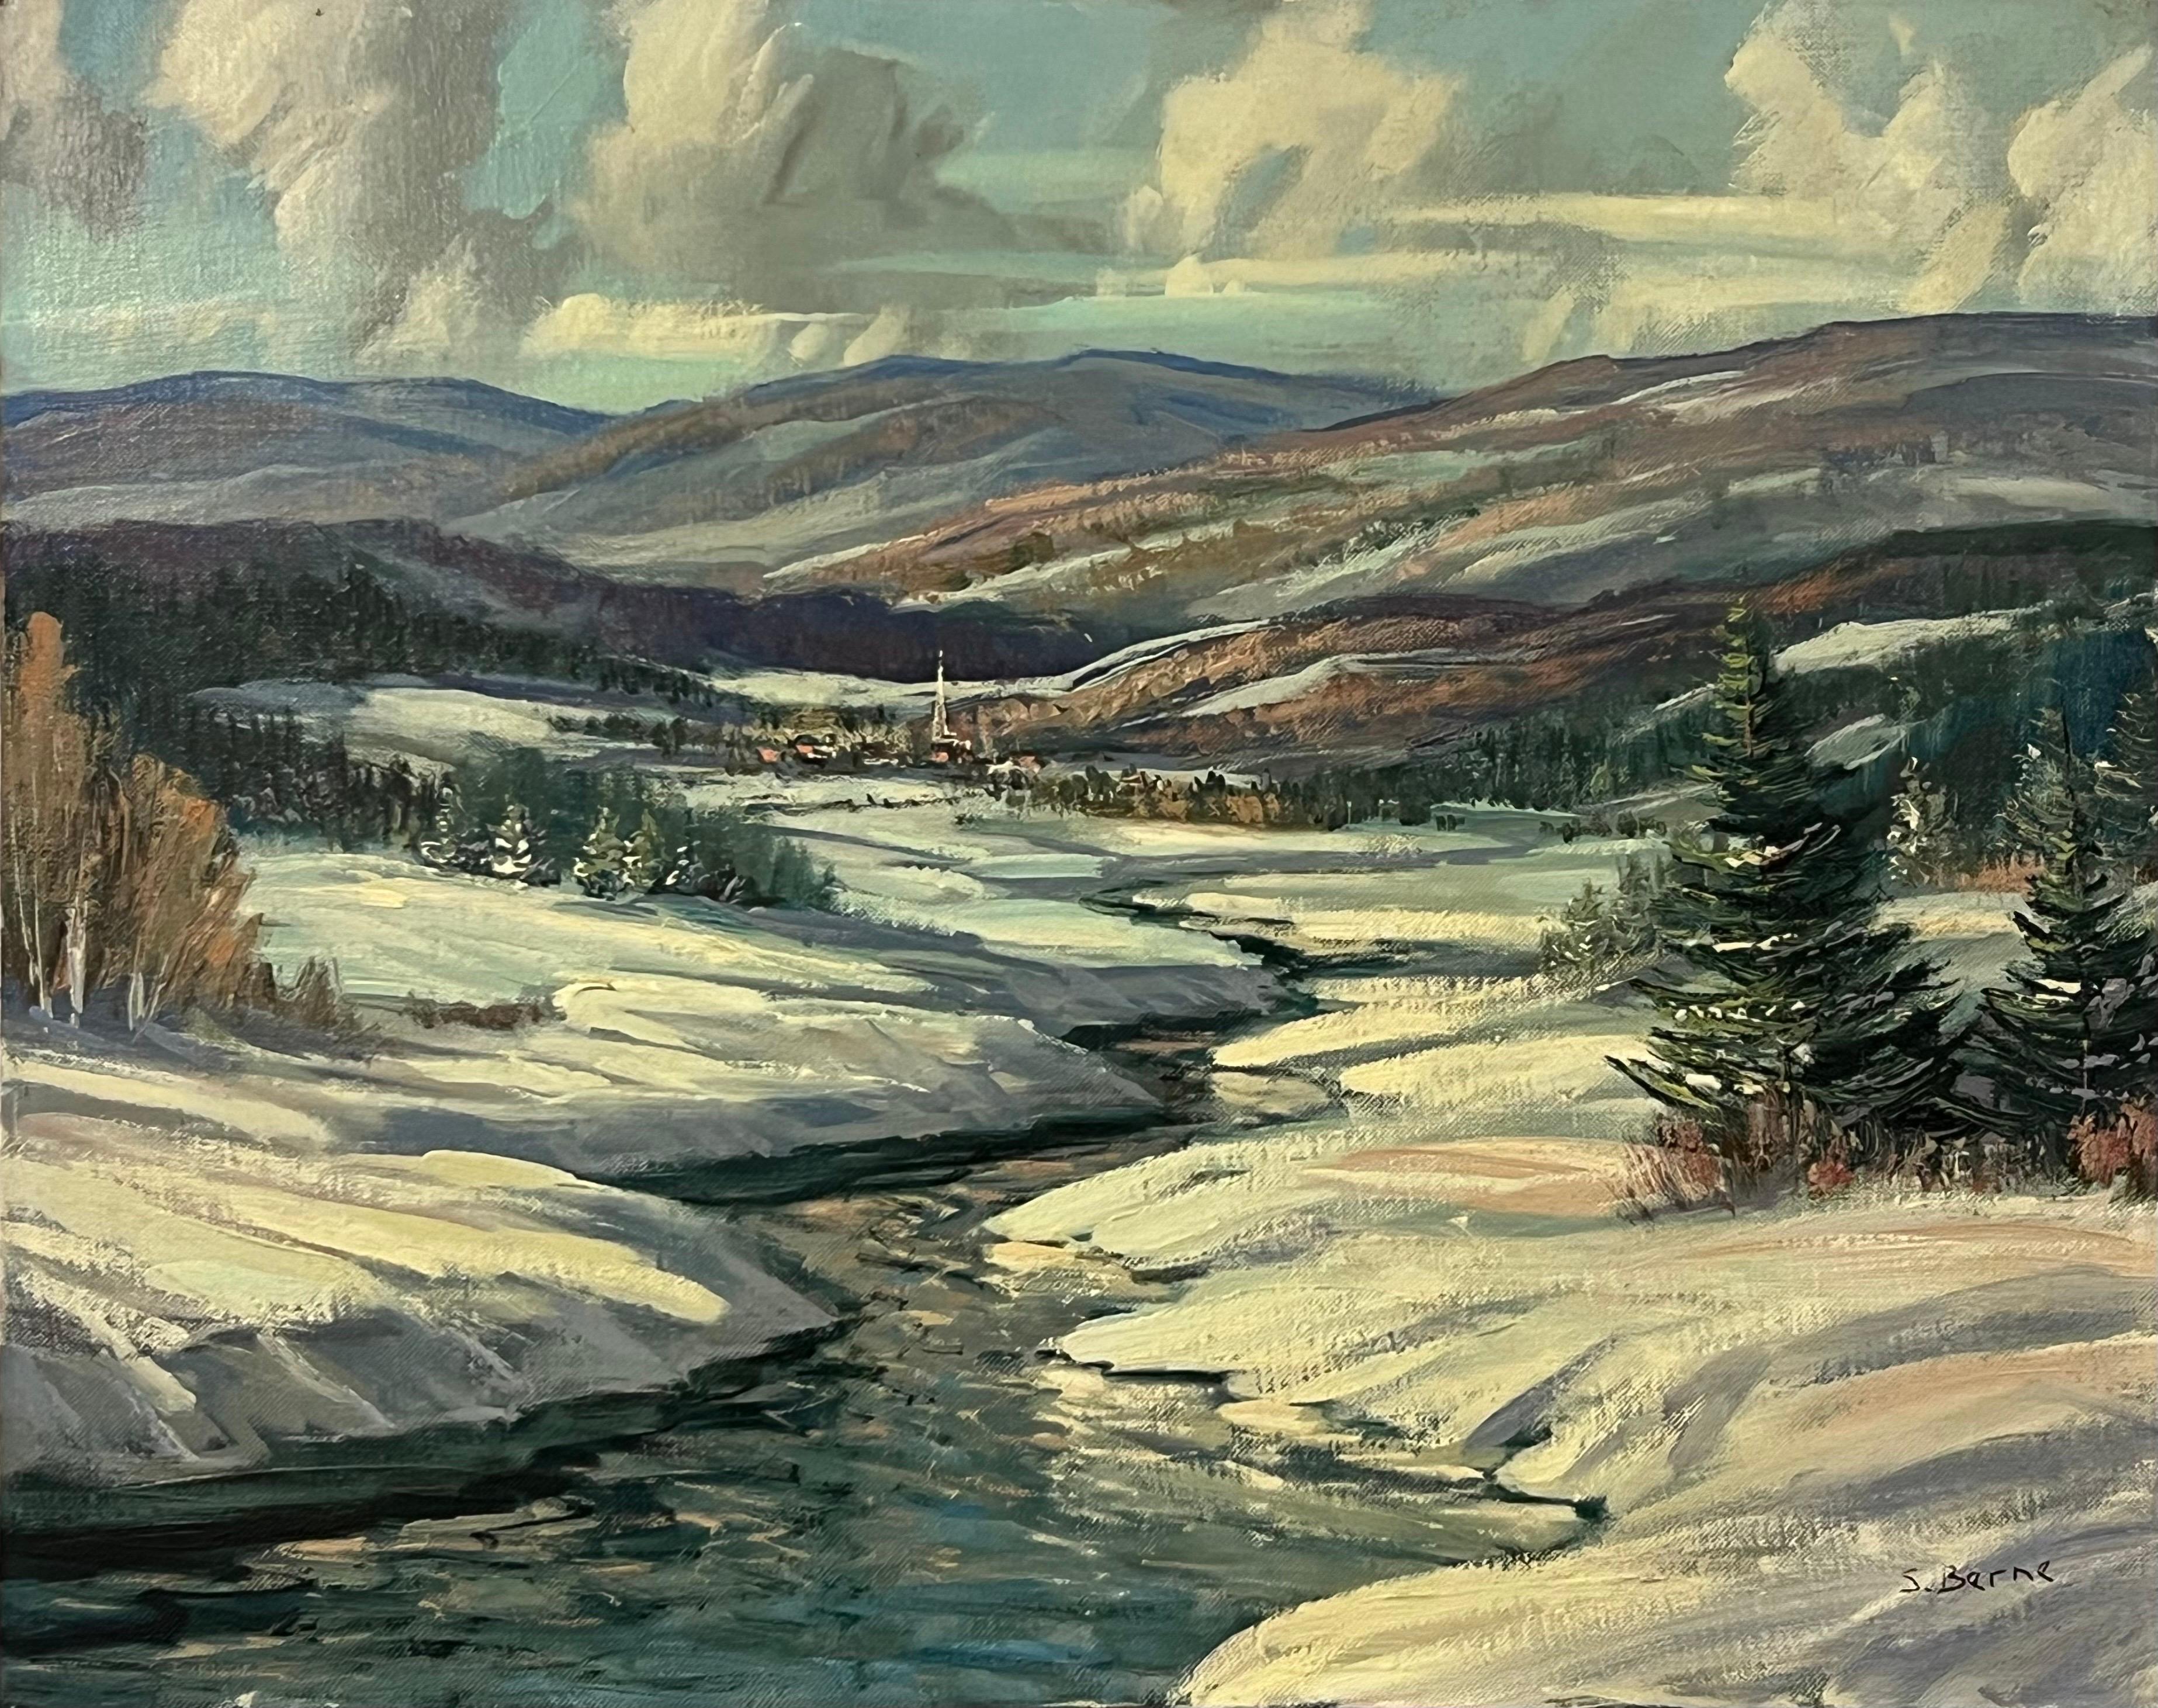 Vintage By Winter Snowy Mountain River Landscape Oil Painting von La Rivière du Nord in Kanada, von 20th Century Canadian Artist, Sydney Berne (1921-2013). 

Kunst misst 20 x 16 Zoll 
Rahmen misst 26 x 22 Zoll 

Vintage 1970's Original, Öl auf